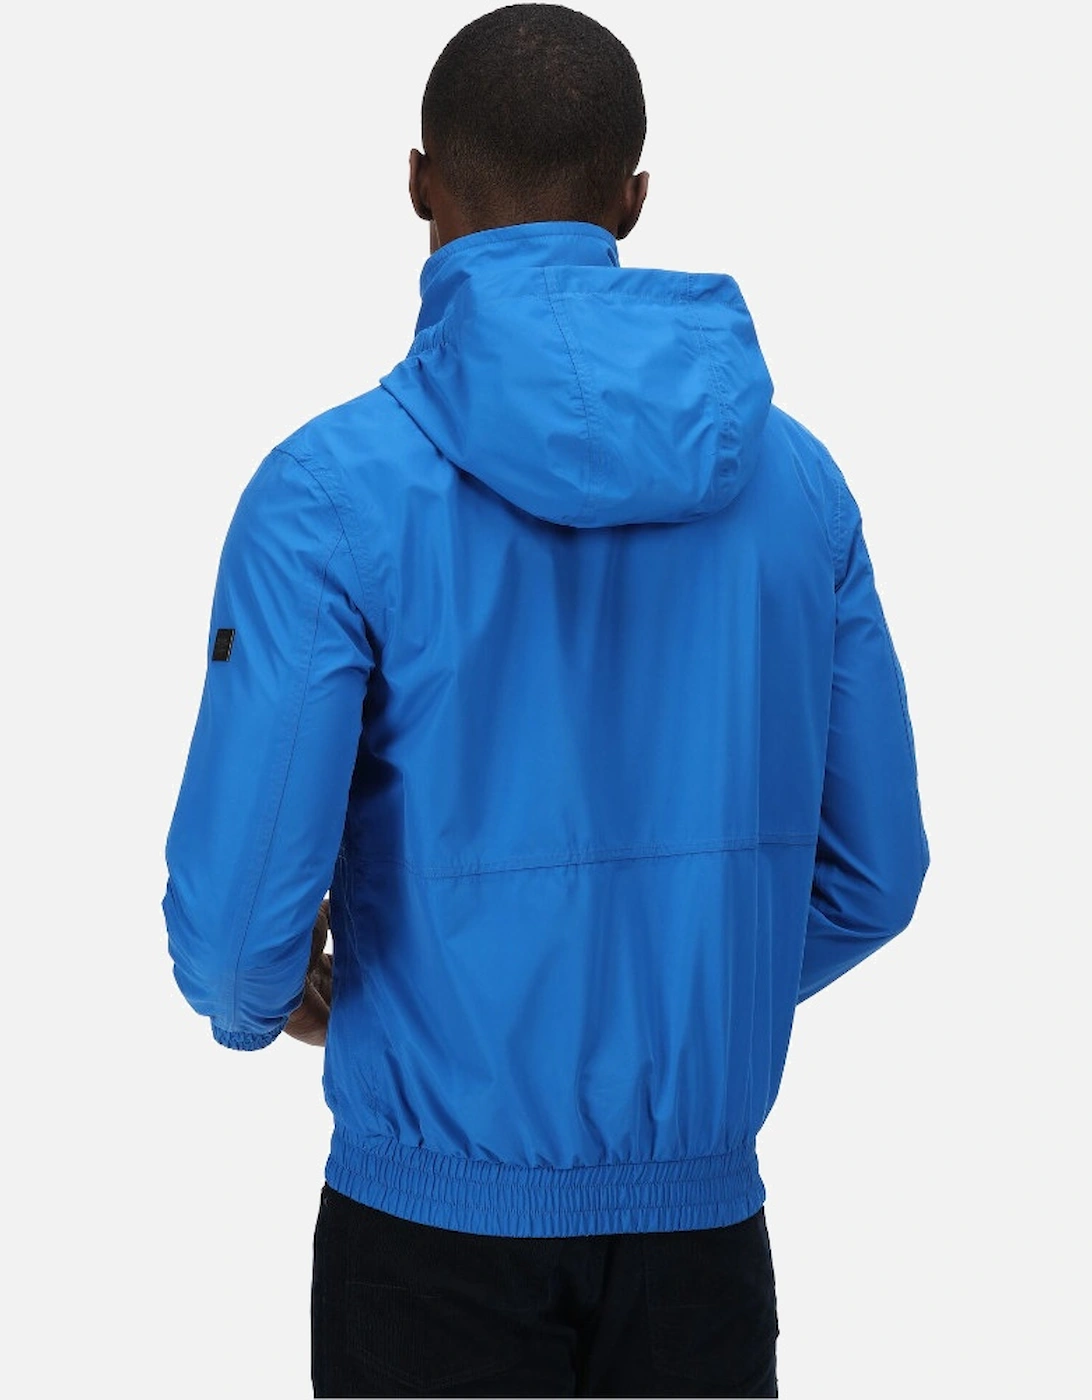 Mens Feelding Waterproof Breathable Jacket